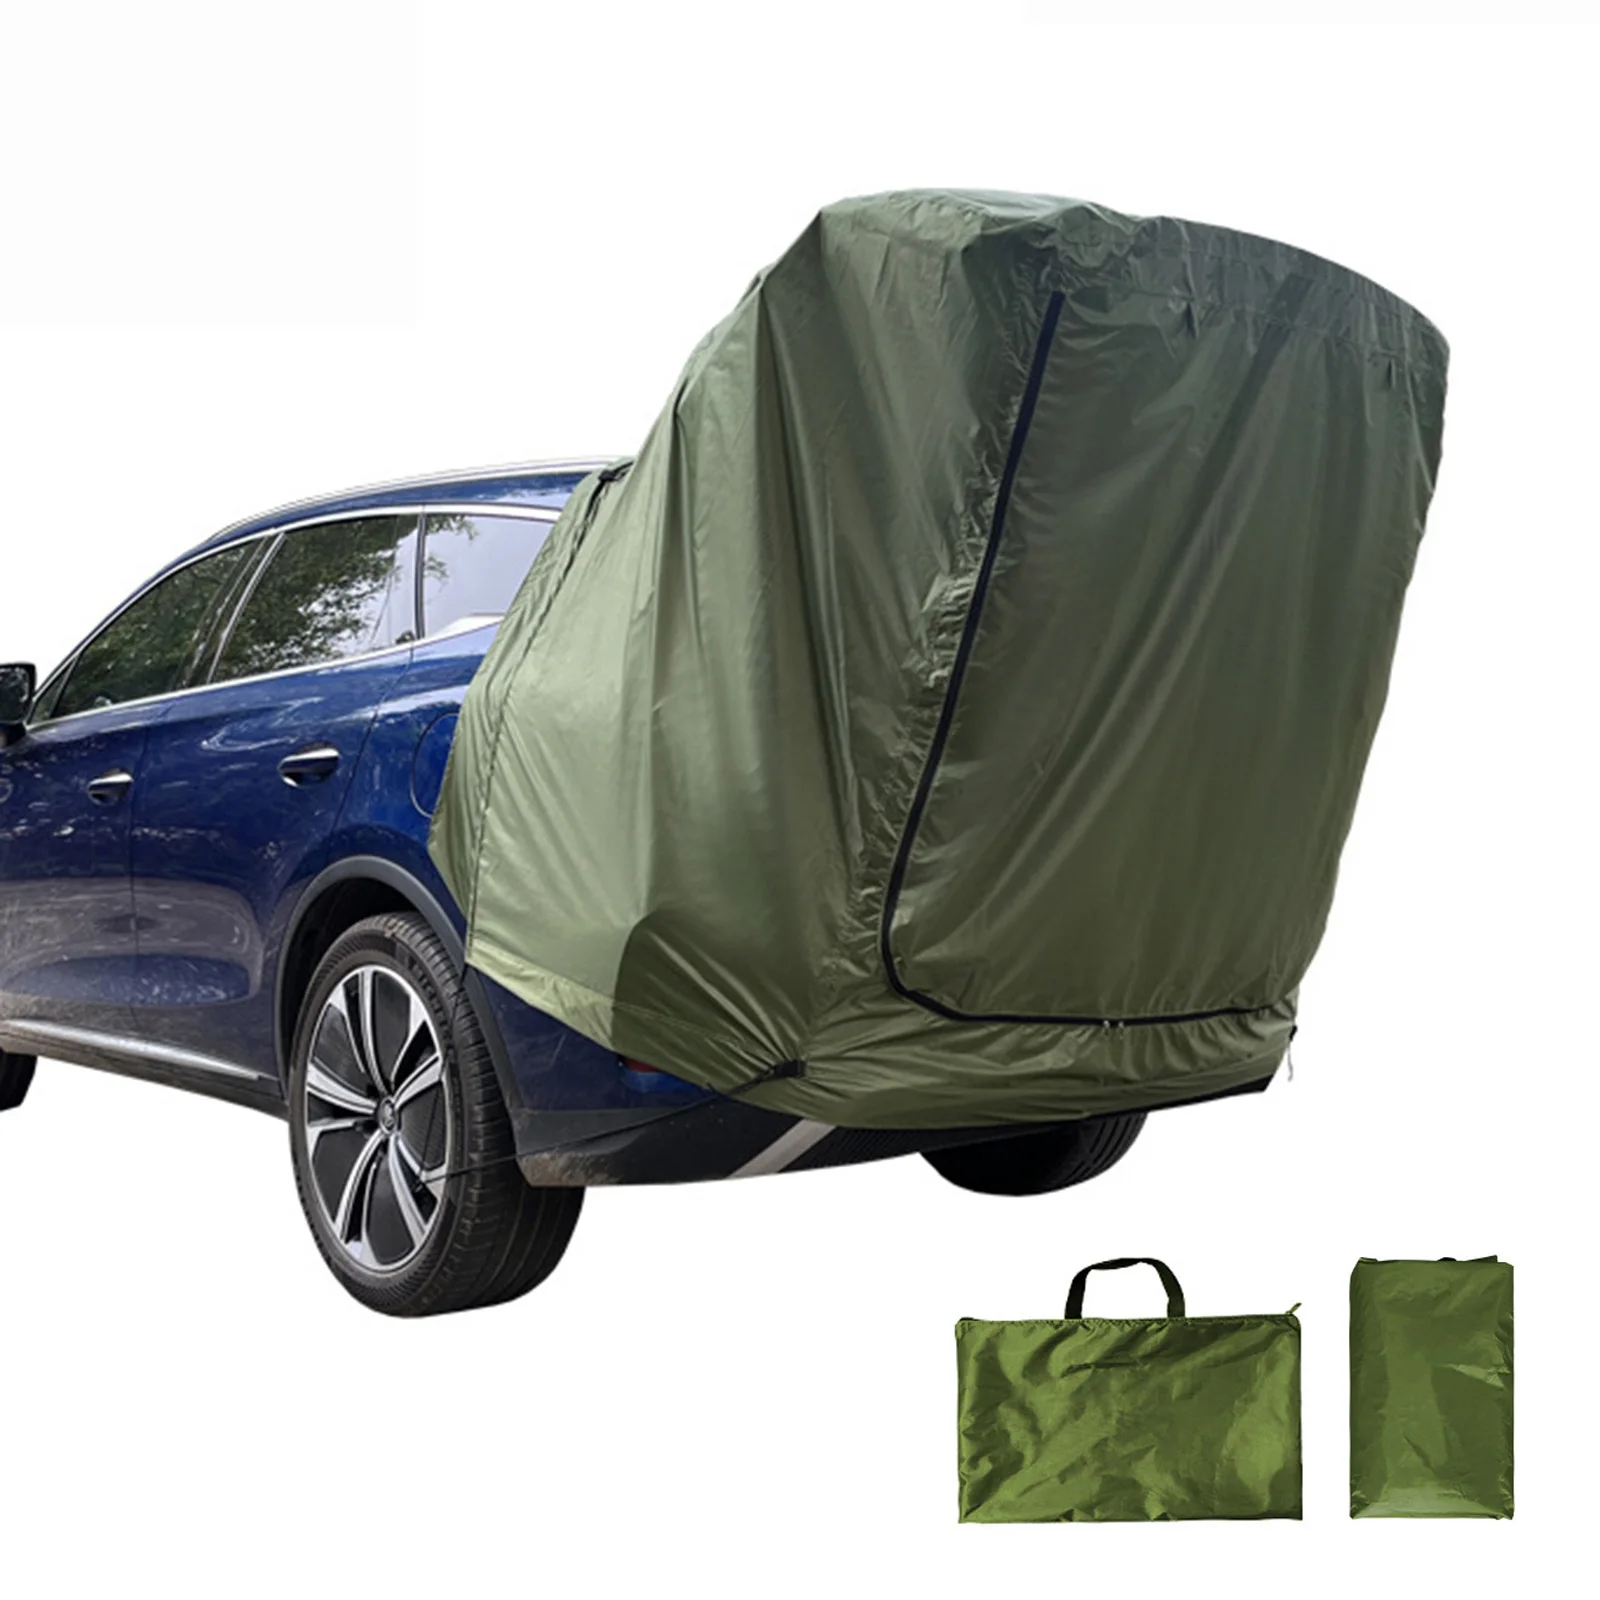 

Задняя палатка для внедорожника, задняя дверь автомобиля, задняя автомобильная палатка для пешего туризма, задняя дверь, палатка с тентом, палатка для кемпинга